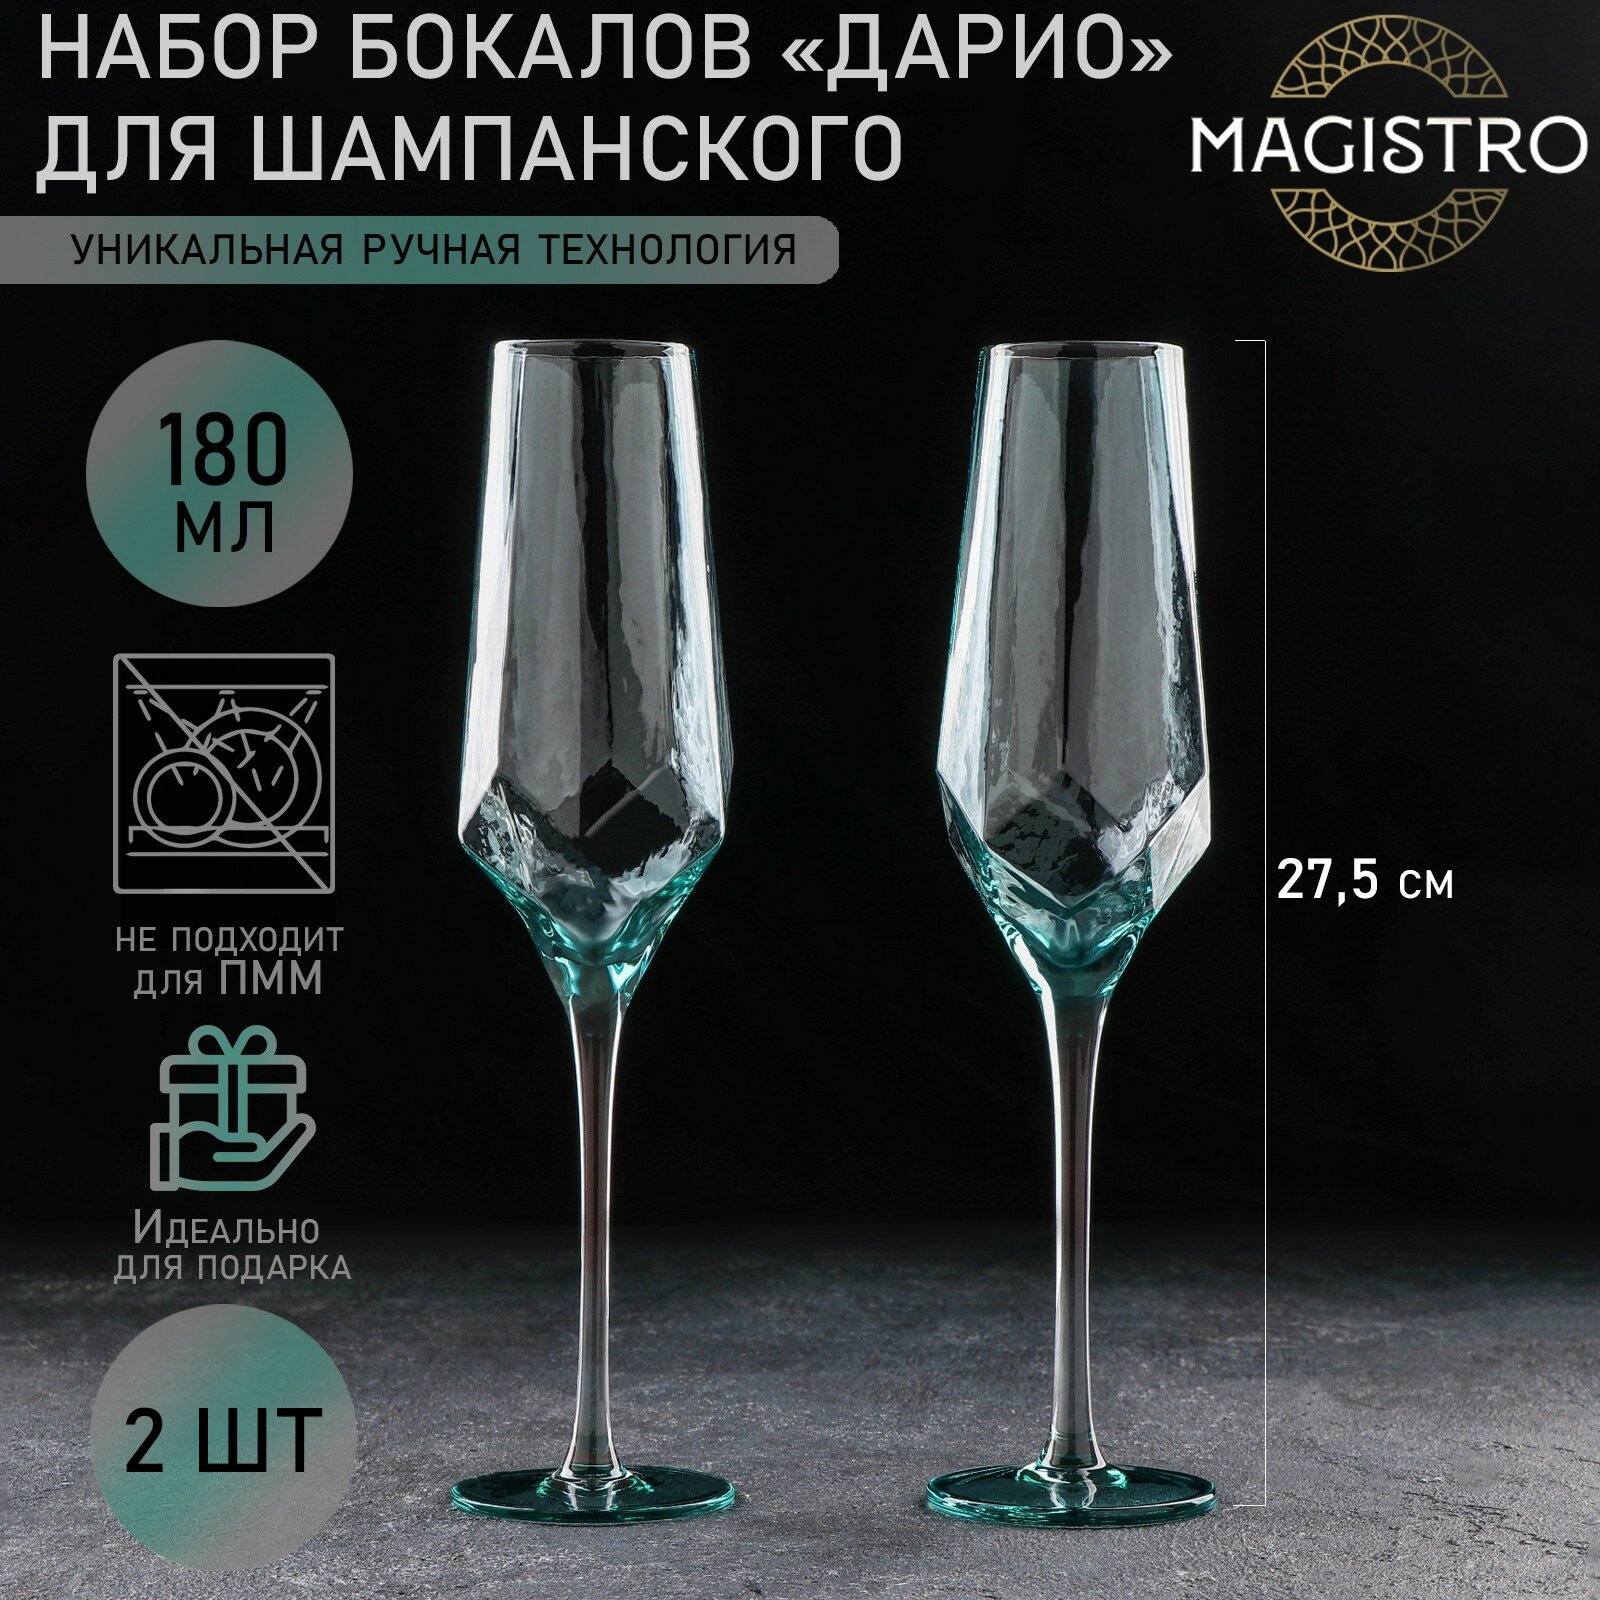 Бокалы для вина Magistro «Дарио», для шампанского, рельефные фужеры, набор 2 шт, 180 мл, цвет изумрудный